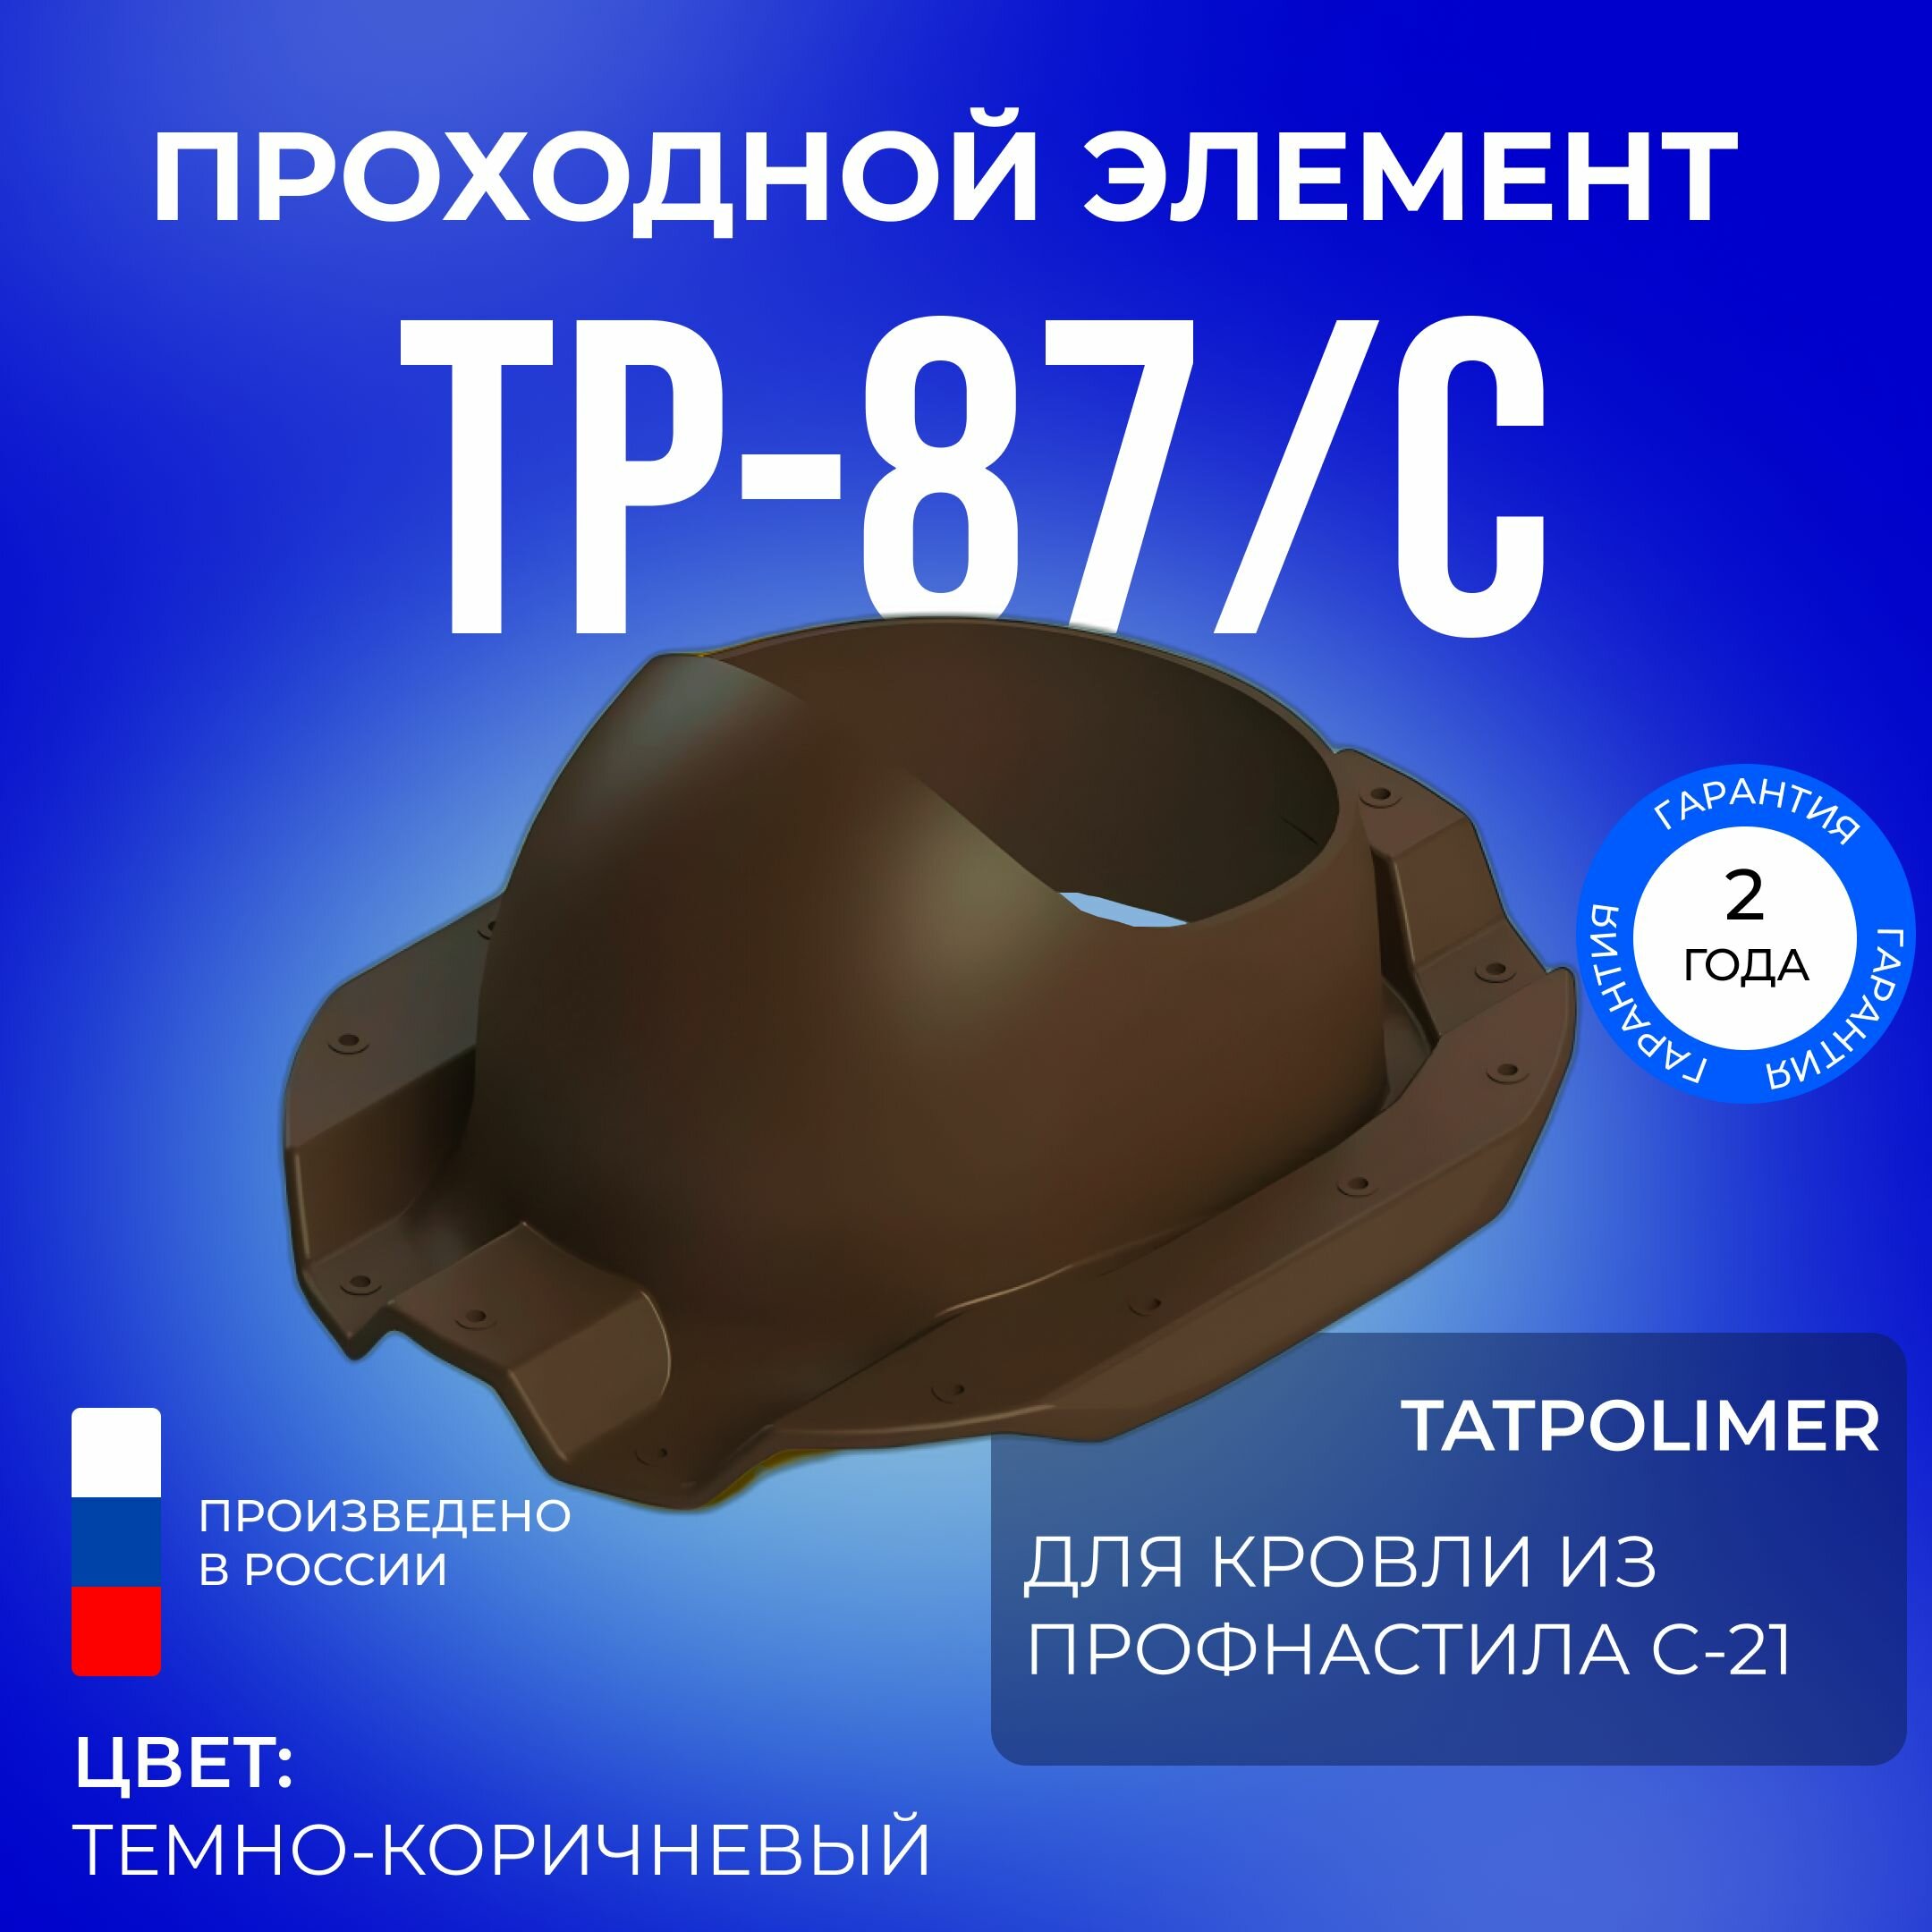 Проходной элемент TP-87/C темно-коричневый